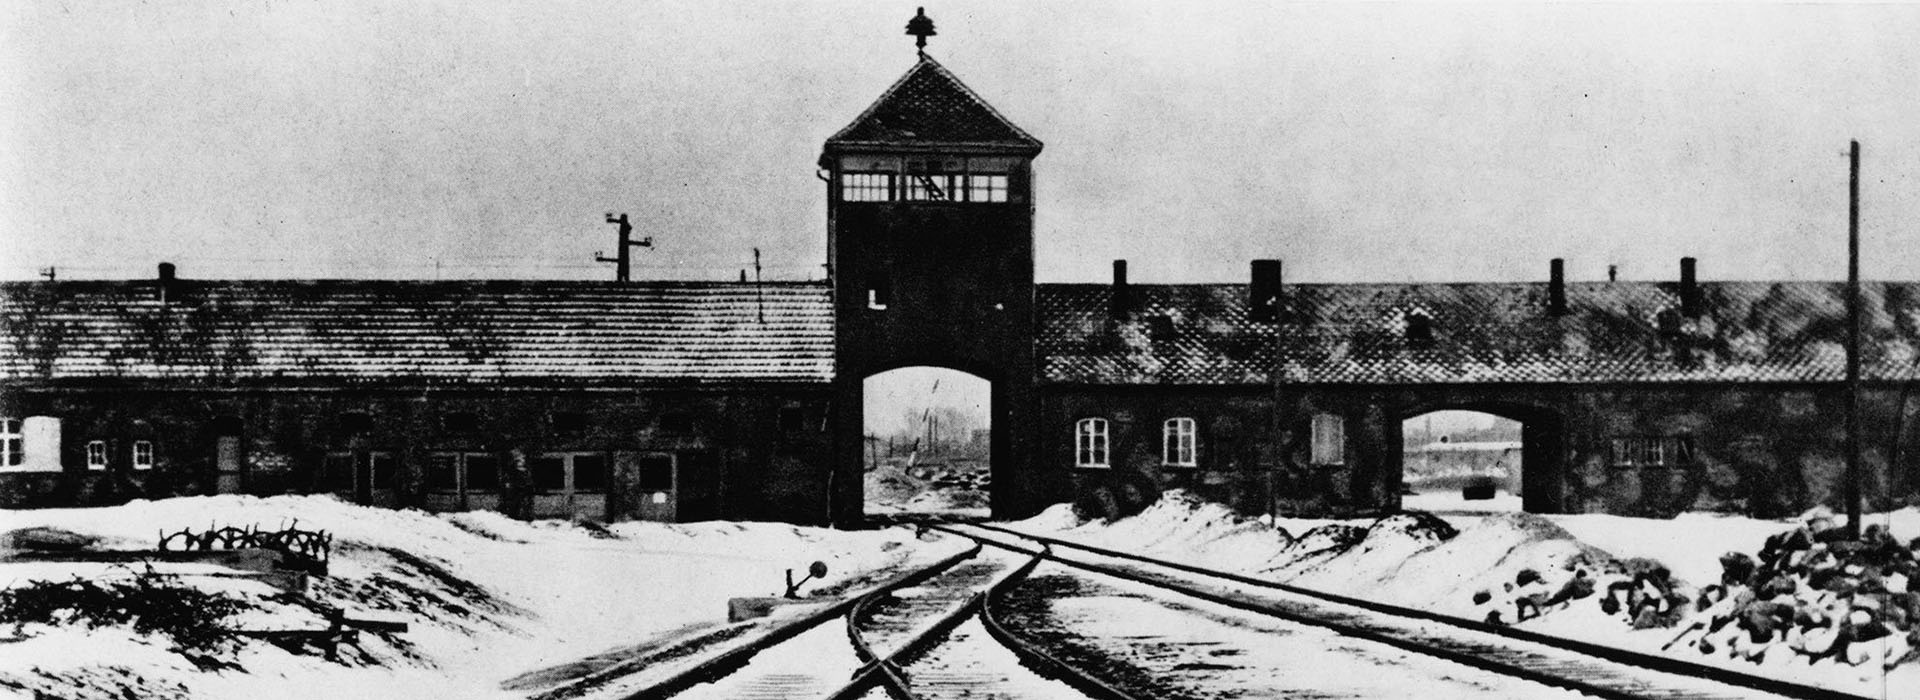 Movie poster Auschwitz: The Hidden Traces